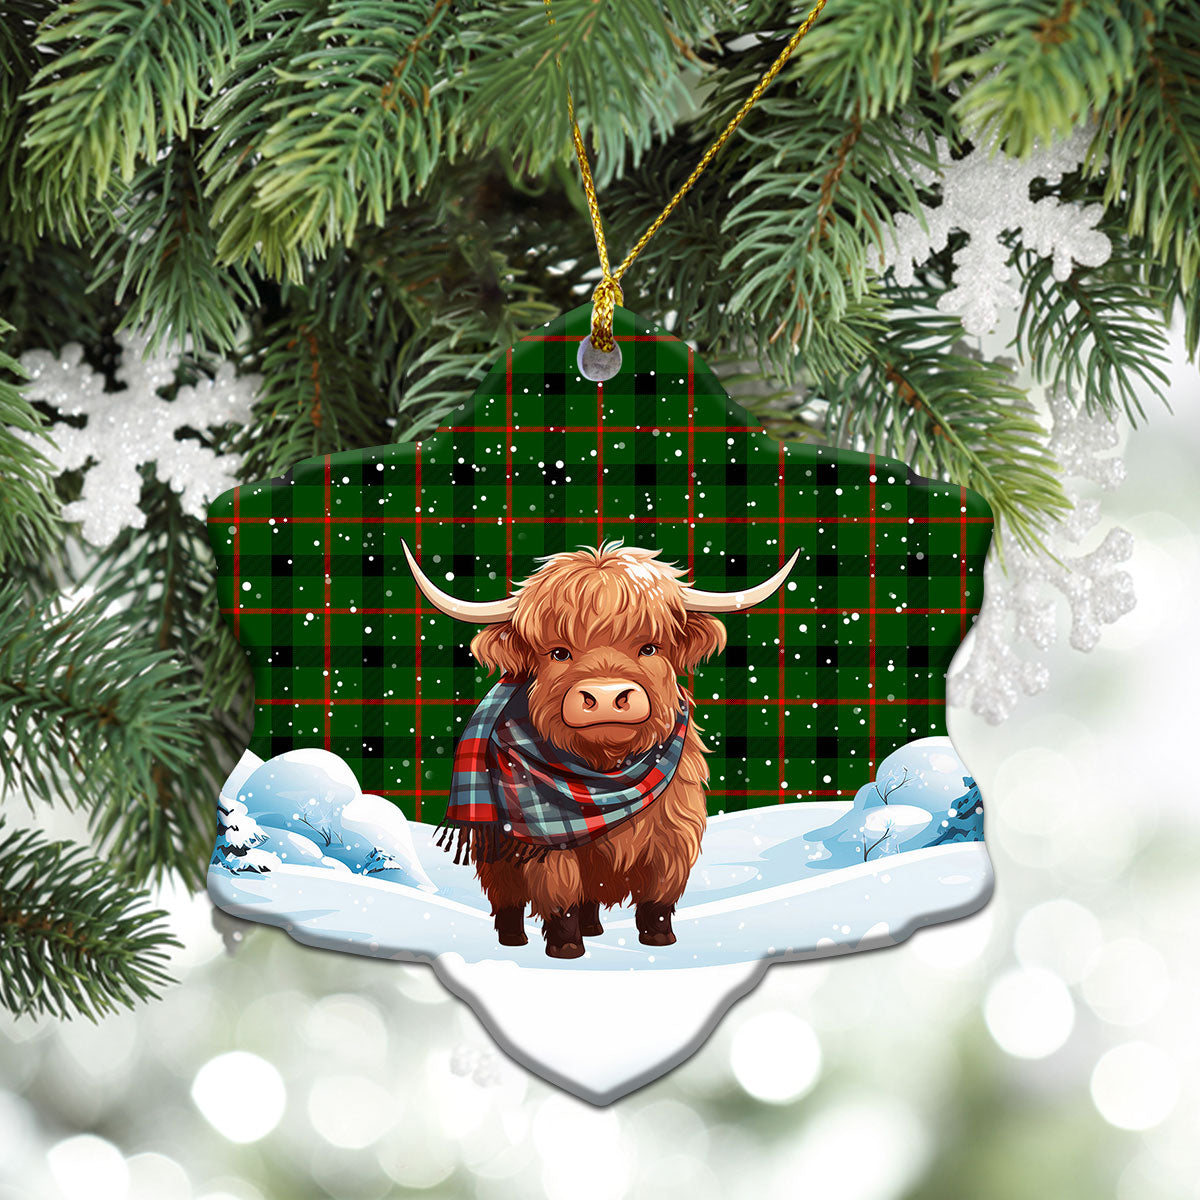 Kincaid Tartan Christmas Ceramic Ornament - Highland Cows Snow Style